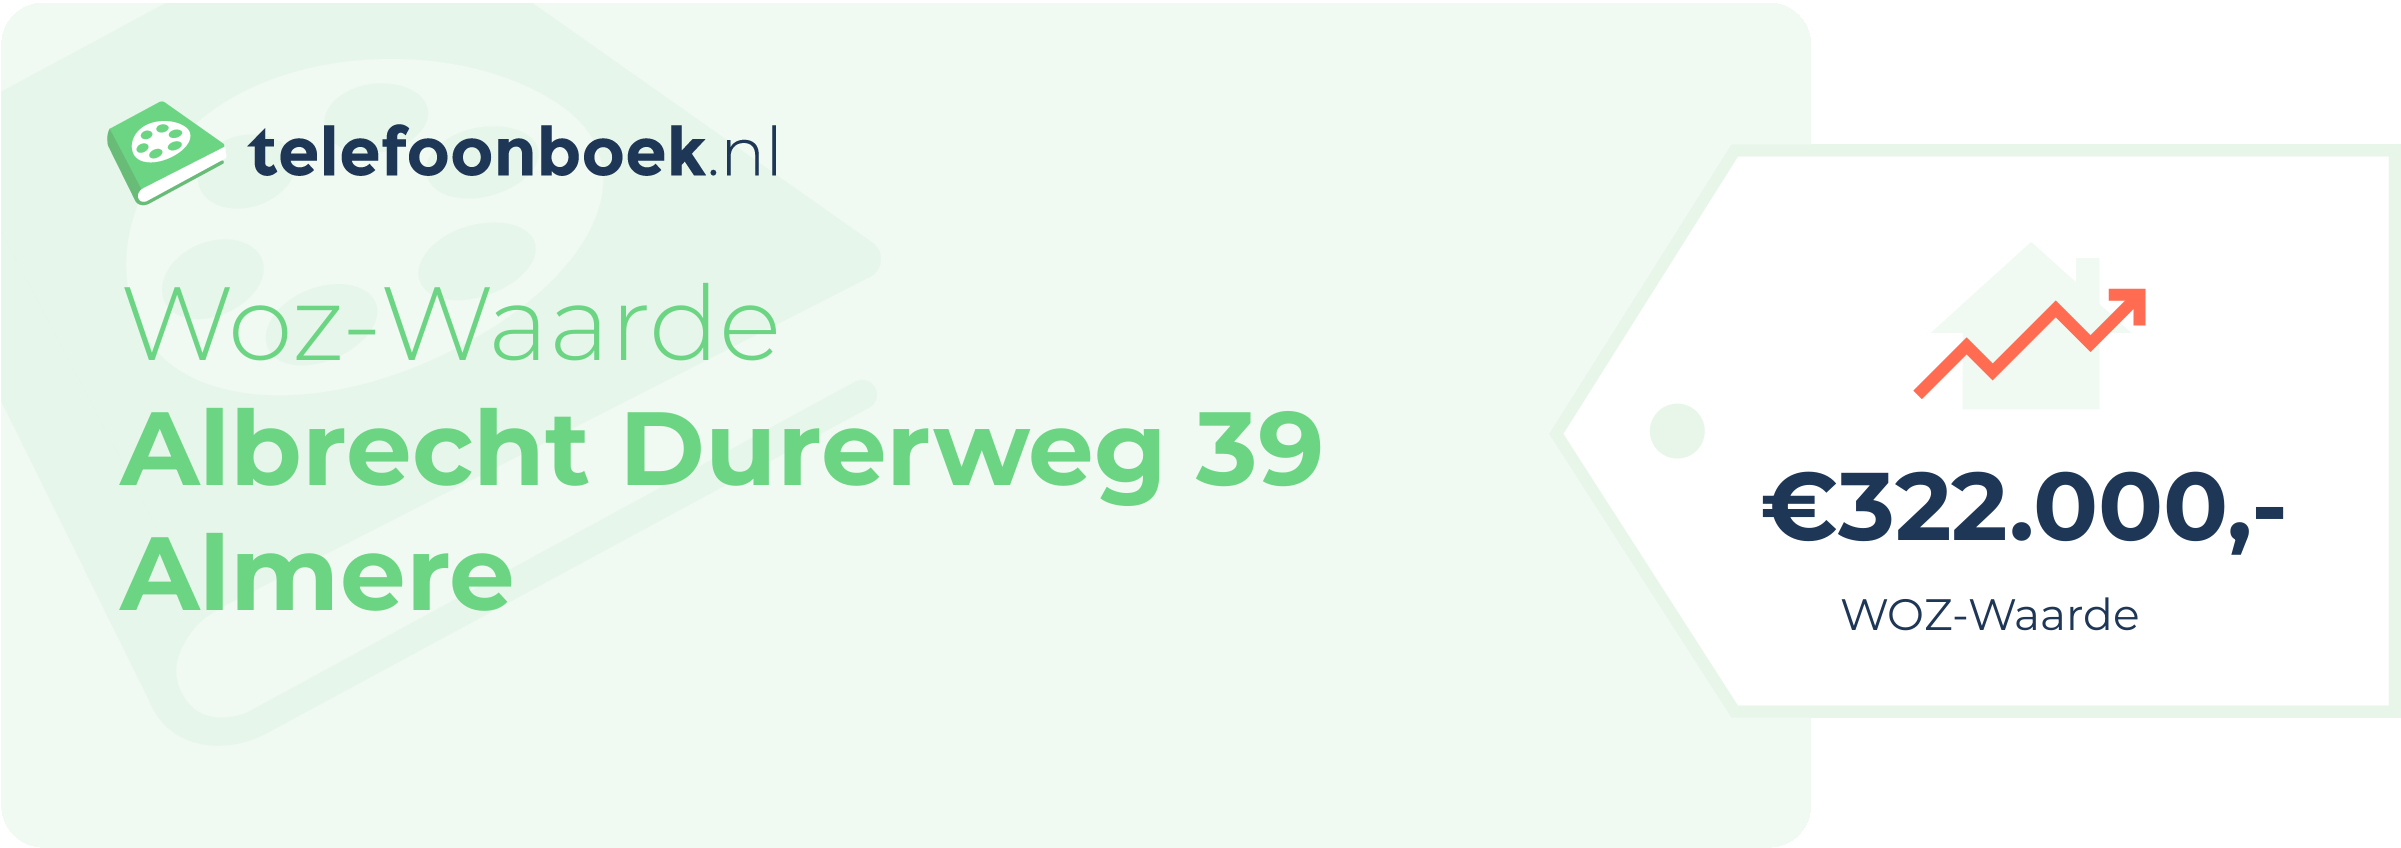 WOZ-waarde Albrecht Durerweg 39 Almere